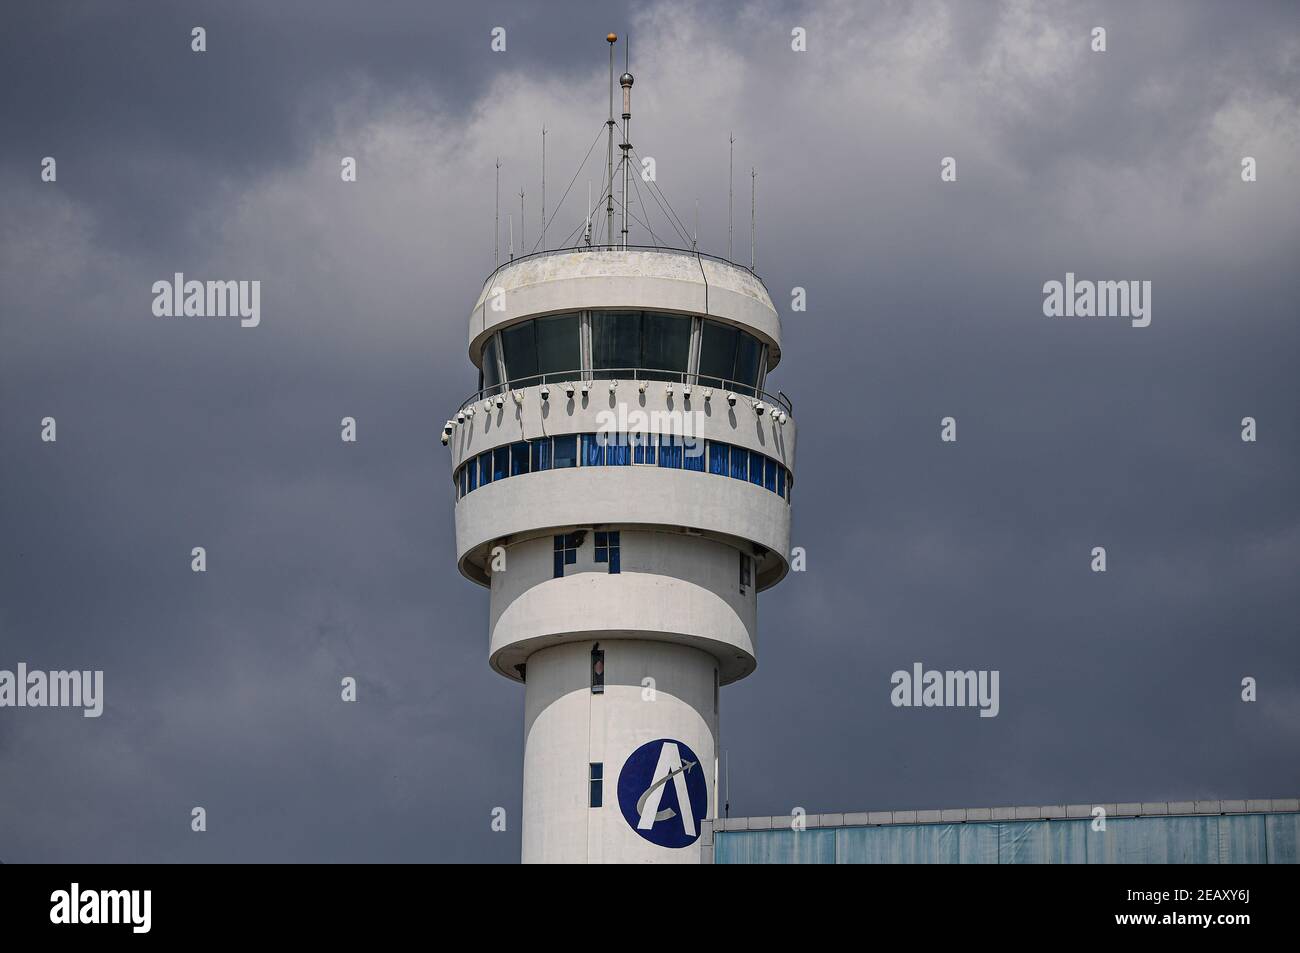 (210211) -- SANYA, 11 de febrero de 2021 (Xinhua) -- la parte superior de la Torre de Control de tráfico aéreo de Sanya, donde trabajan los controladores de tráfico aéreo, se muestra en Sanya, provincia de Hainan, al sur de China, el 28 de enero de 2021. Hong Yuan, de 29 años, es un controlador de tráfico aéreo en Sanya Air Traffic Control Tower. Como controlador de tráfico aéreo, Hong es responsable de navegar por el tráfico aéreo, guiar a los pilotos durante el despegue y el aterrizaje, y supervisar los aviones a medida que viajan por los cielos. Este trabajo requiere una alta atención. En consecuencia, se supone que los funcionarios deben tomar un descanso cada dos horas para recuperarse de la intensa OT Foto de stock